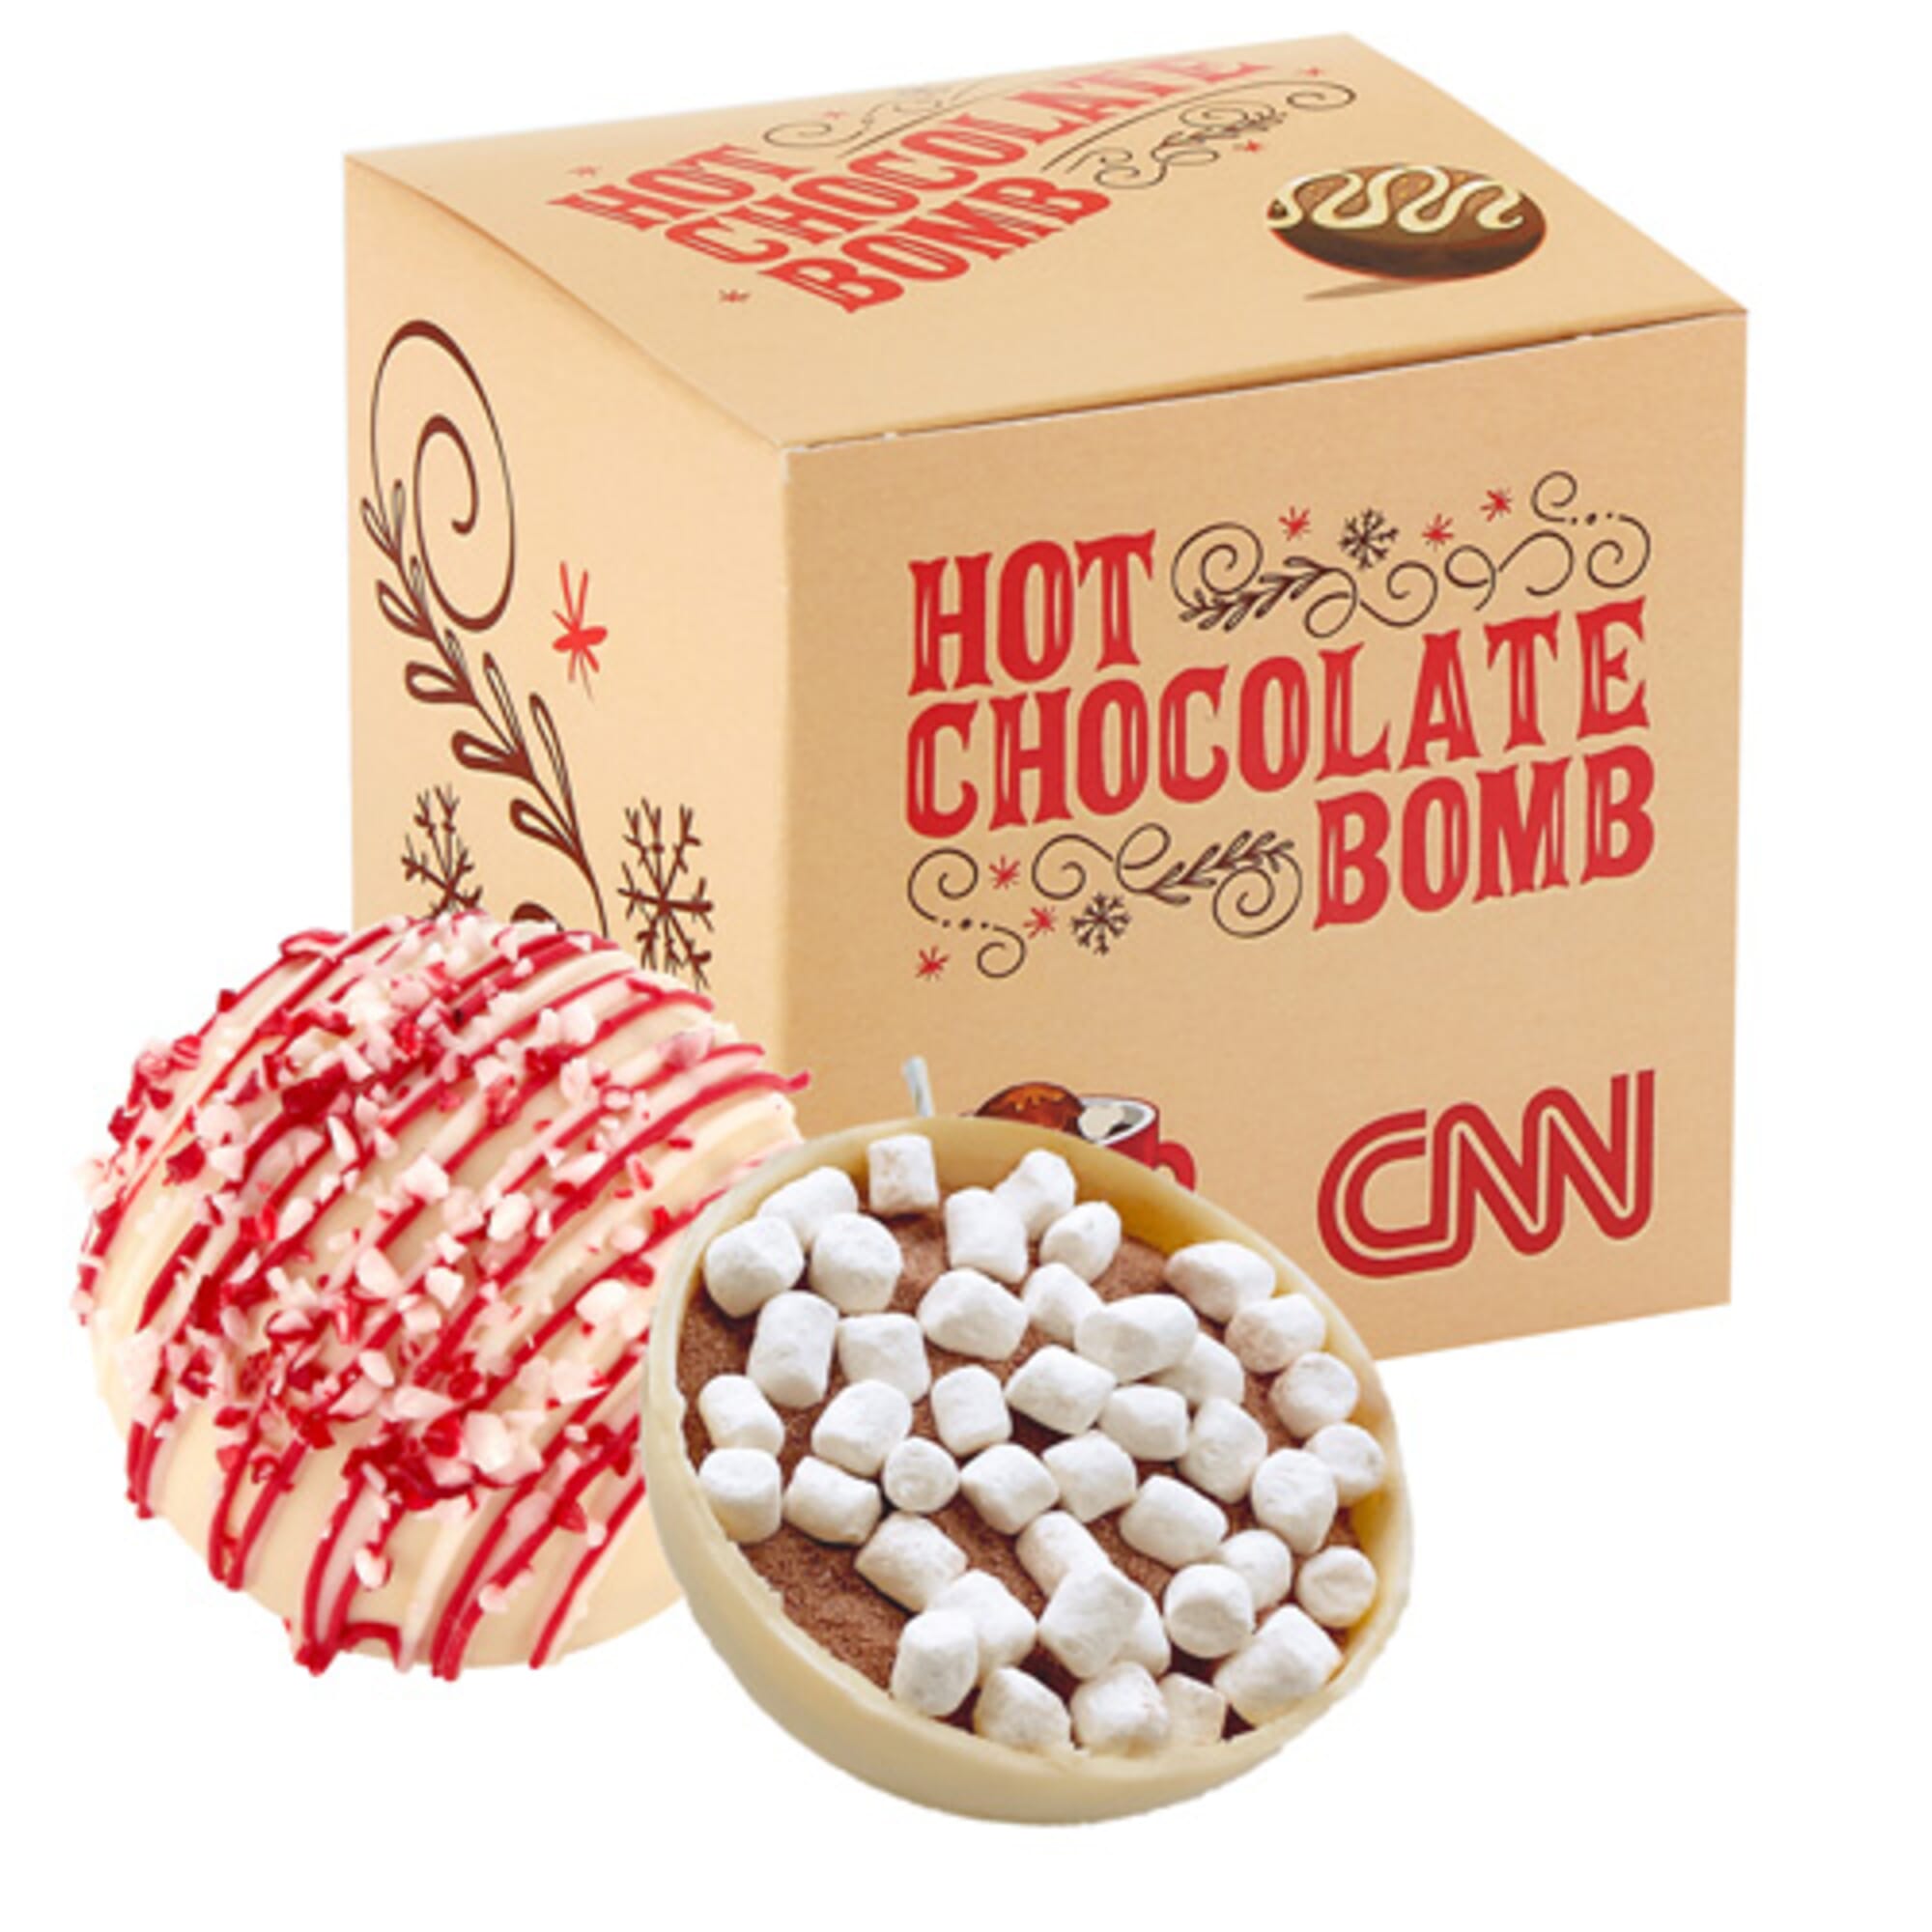 Hot Chocolate Bomb Gift Box